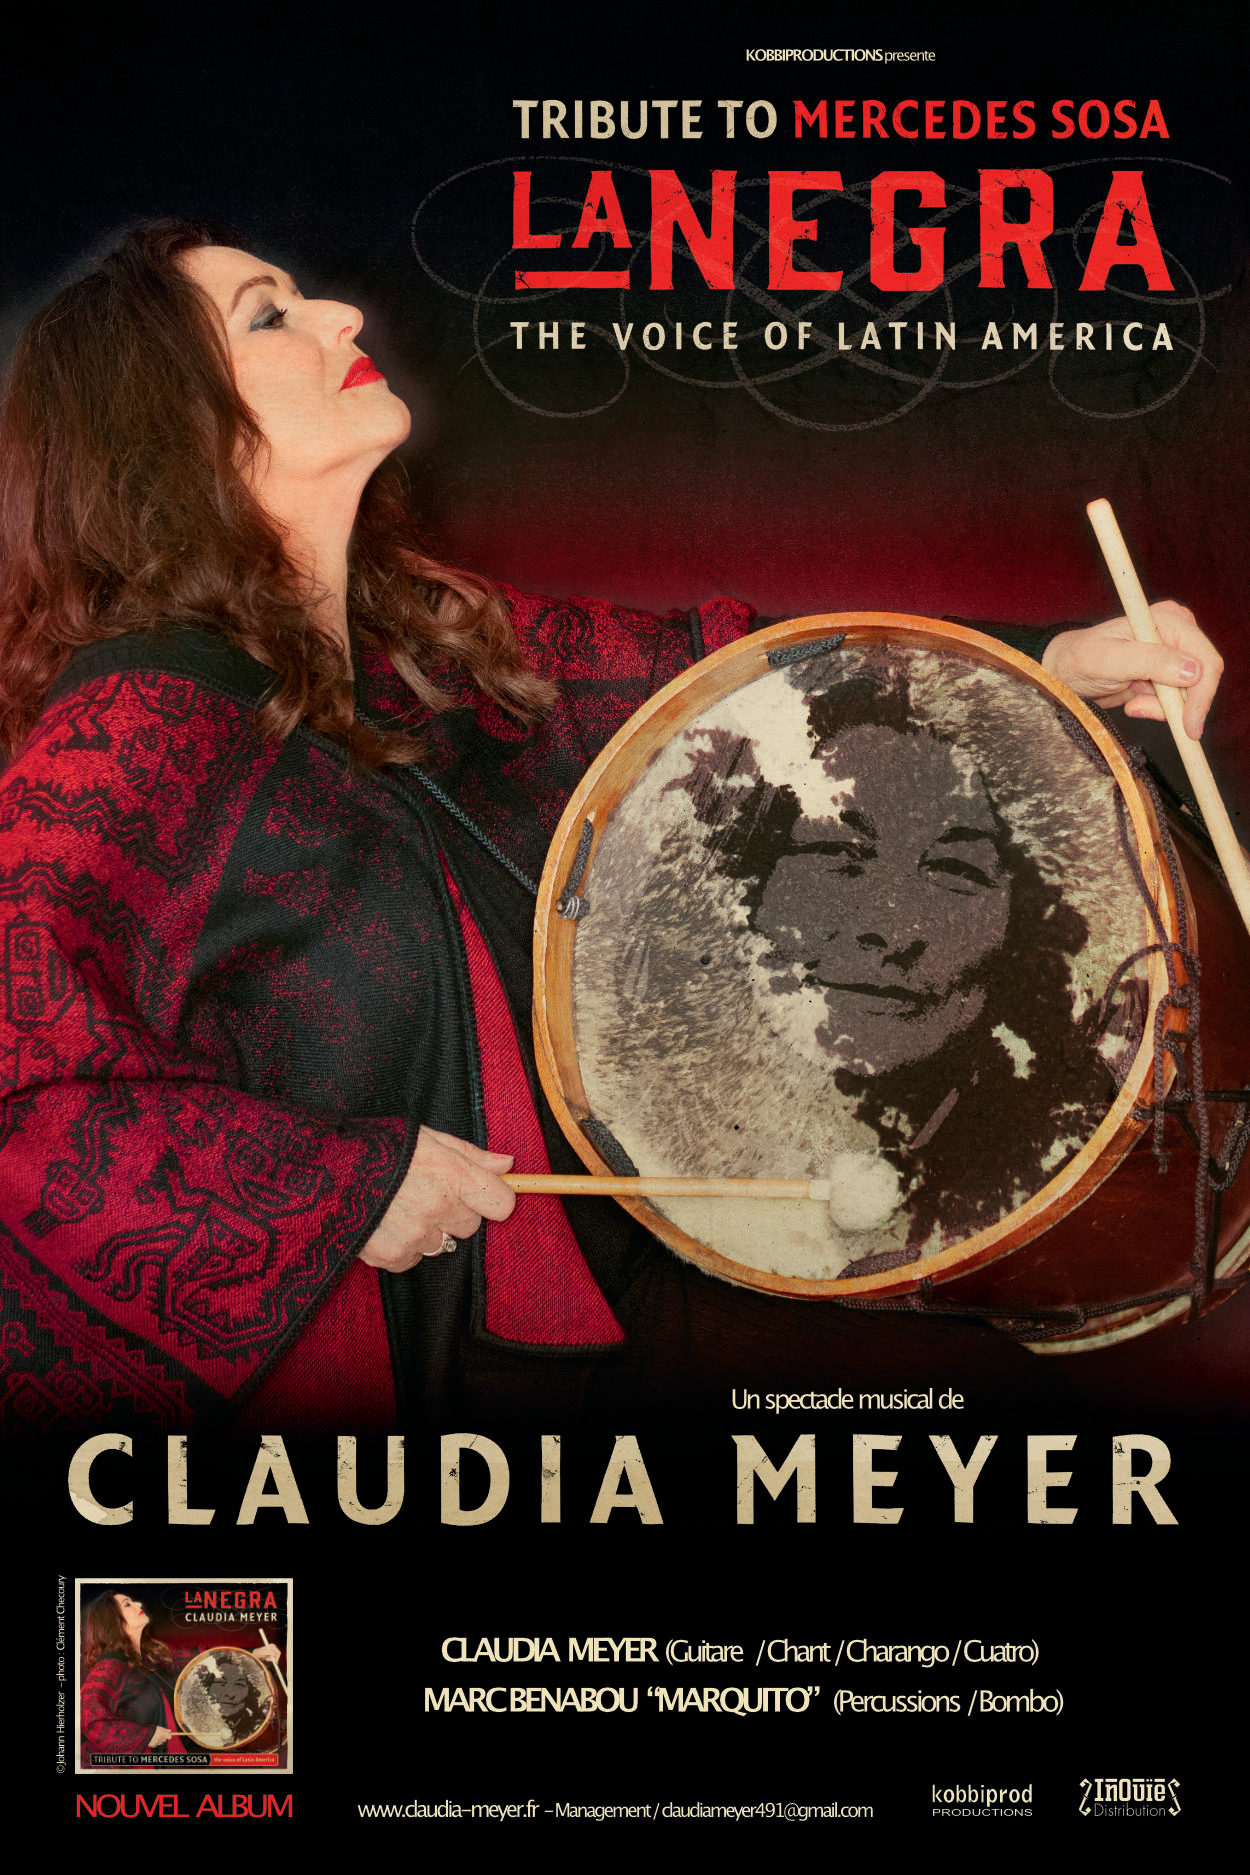 Claudia Meyer présente "La Negra" - Tribute to Mercedes... Le 25 avr 2024